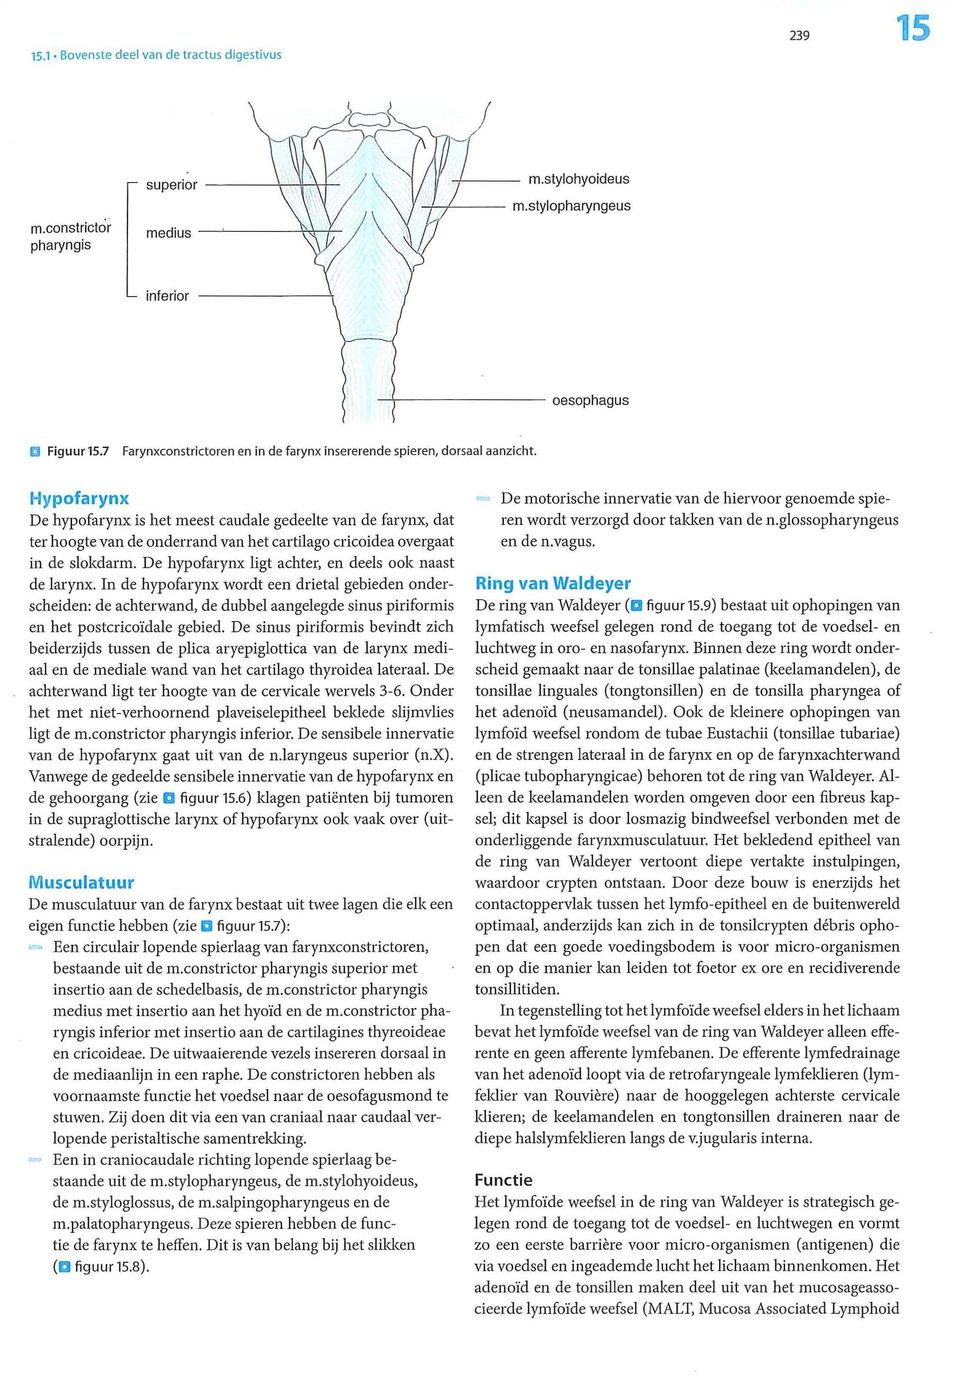 De hypofarynx ligt achter, en deels ook naast de larynx. In de hypofarynx wordt een drietal gebieden onderscheiden: de achterwand, de dubbel aangelegde sinus piriformis en het postcricoïdale gebied.